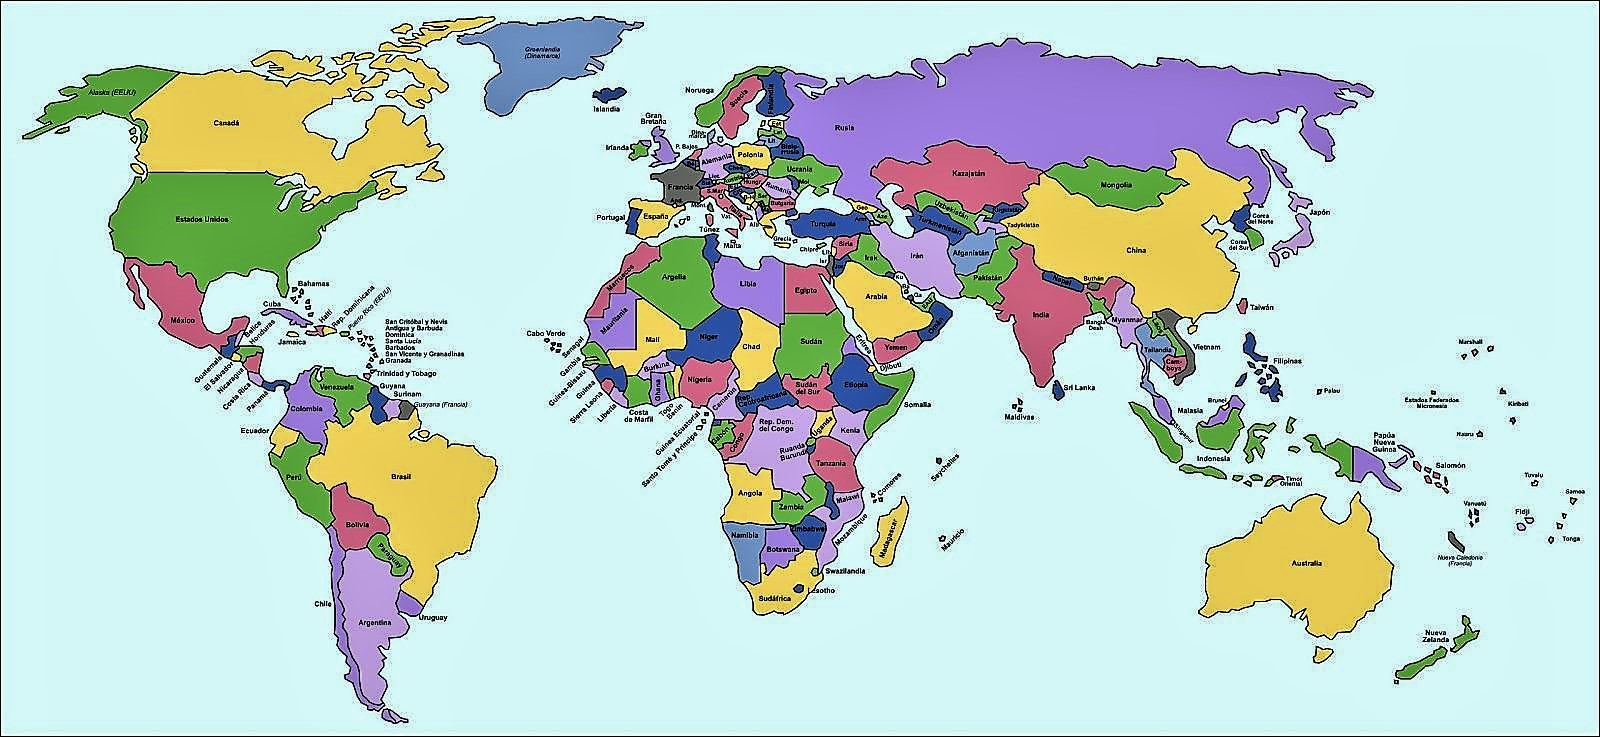 ▷ Mapamundis políticos para imprimir | Mapas del mundo de todo tipo